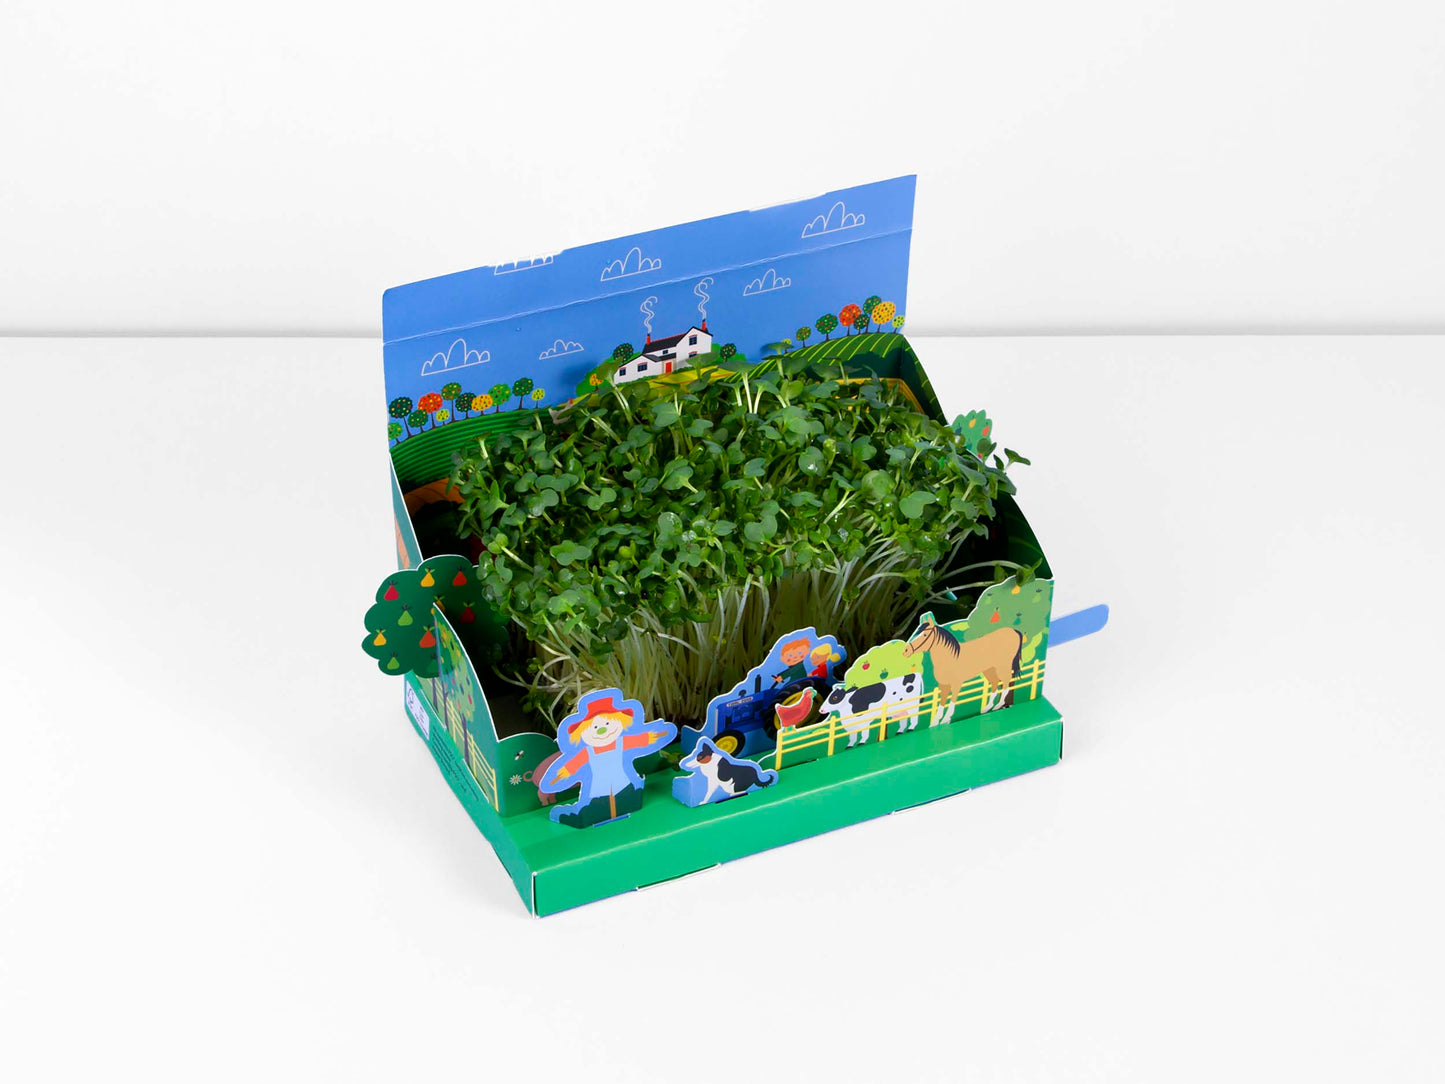 Grow Your Own Mini Farmyard Garden